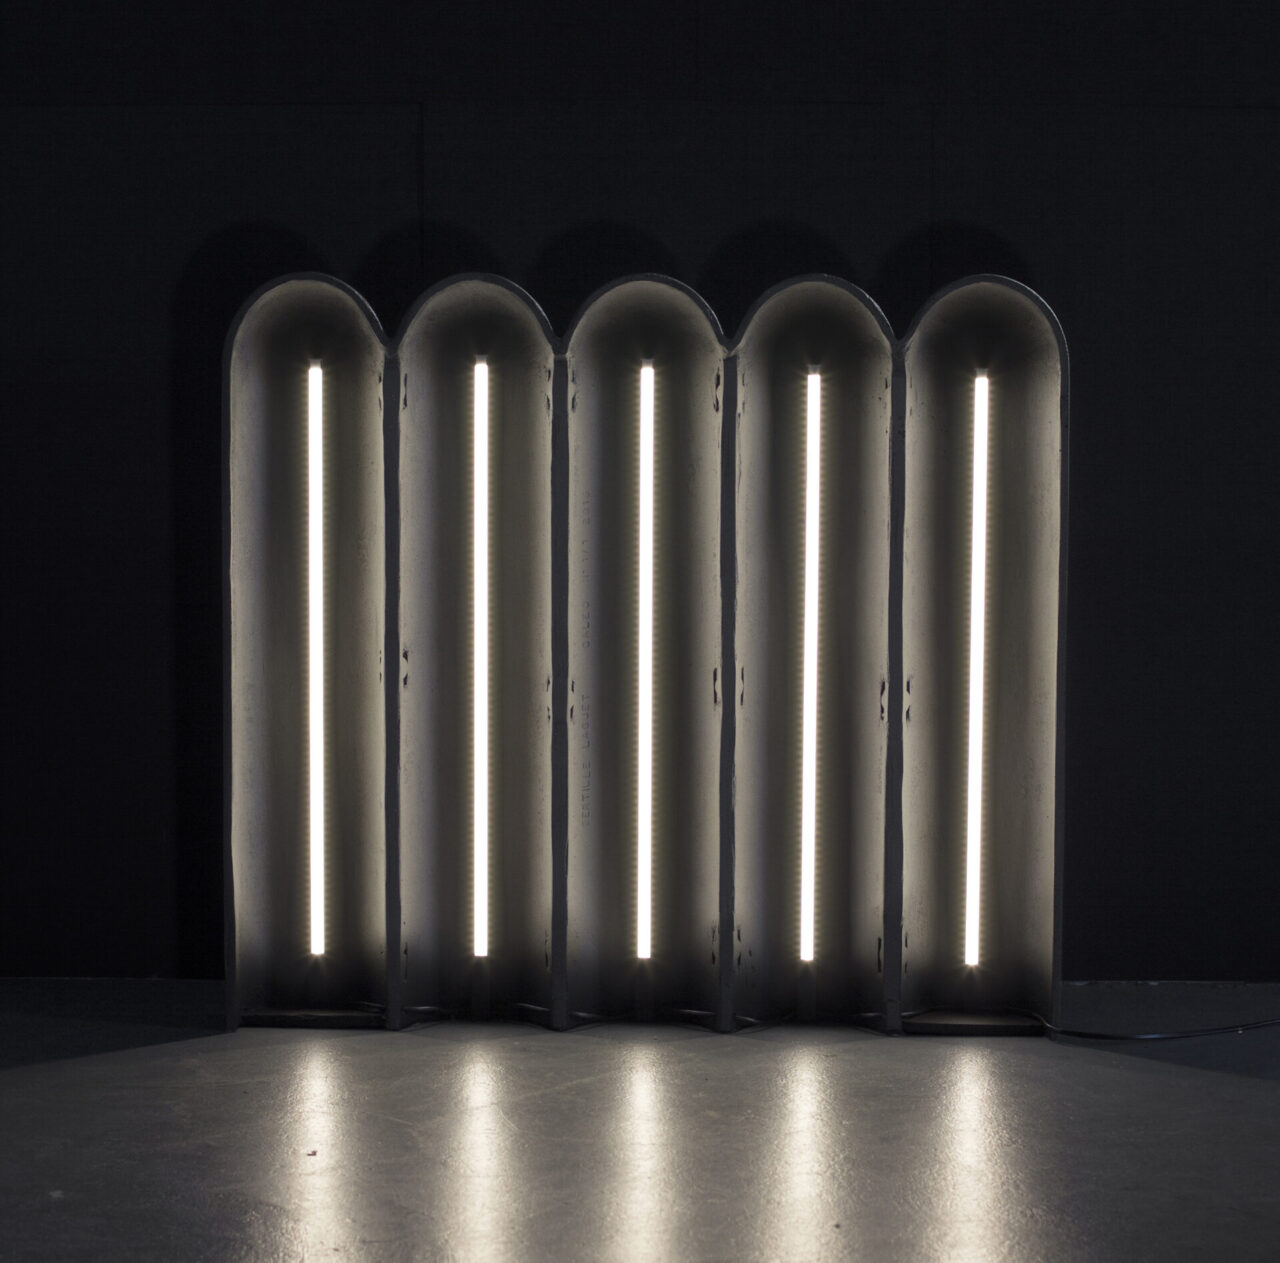 Caleo : envers de l'objet lumineux allumé. Barres LED et fonderie d'aluminium gris anthracite. Design suisse Bertille Laguet. Fabrication française par l'artiste elle-même.